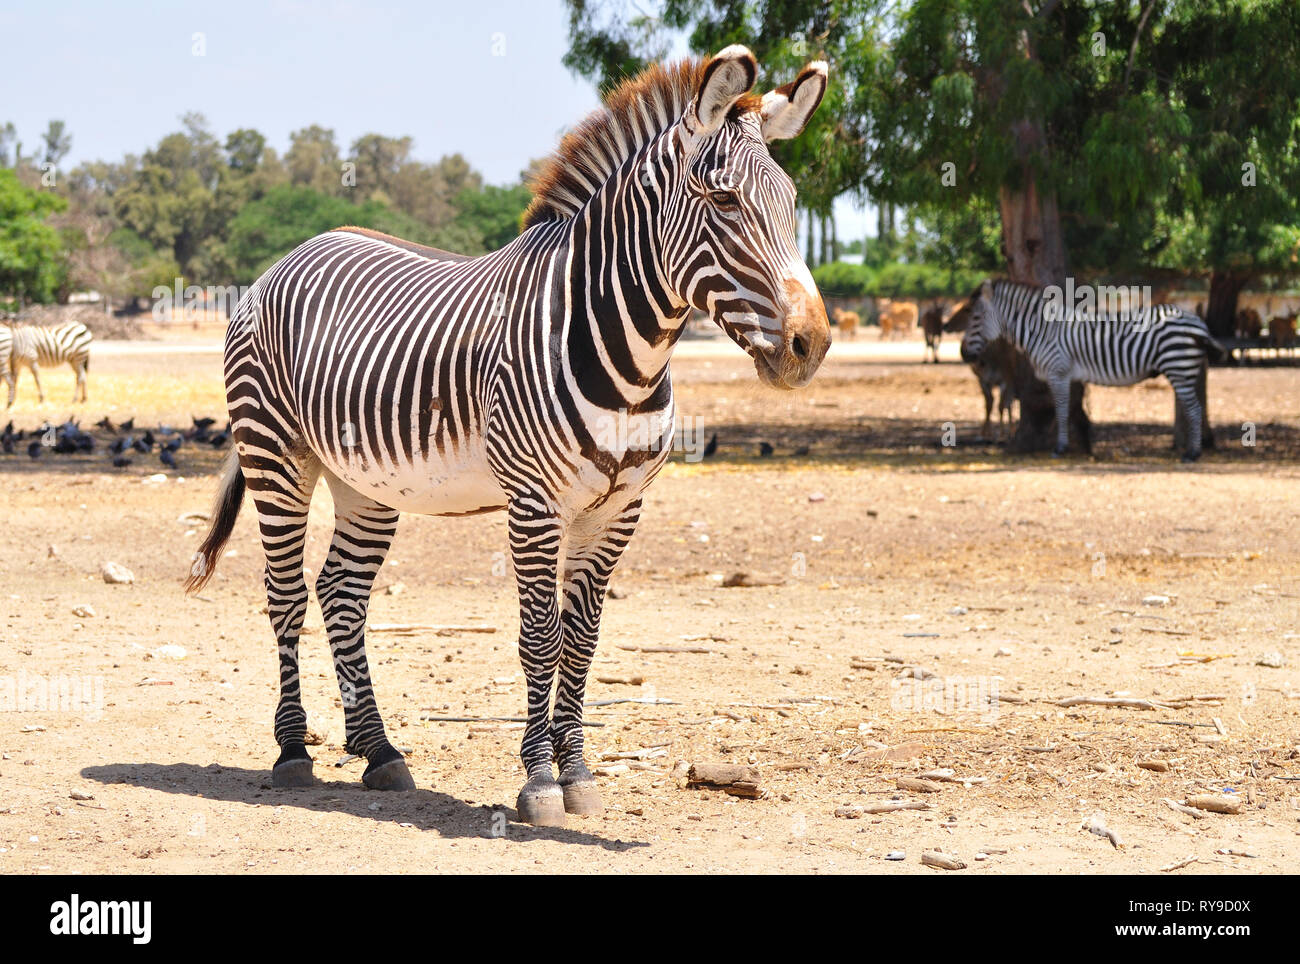 Zebra in safari park. Central Israel. Stock Photo